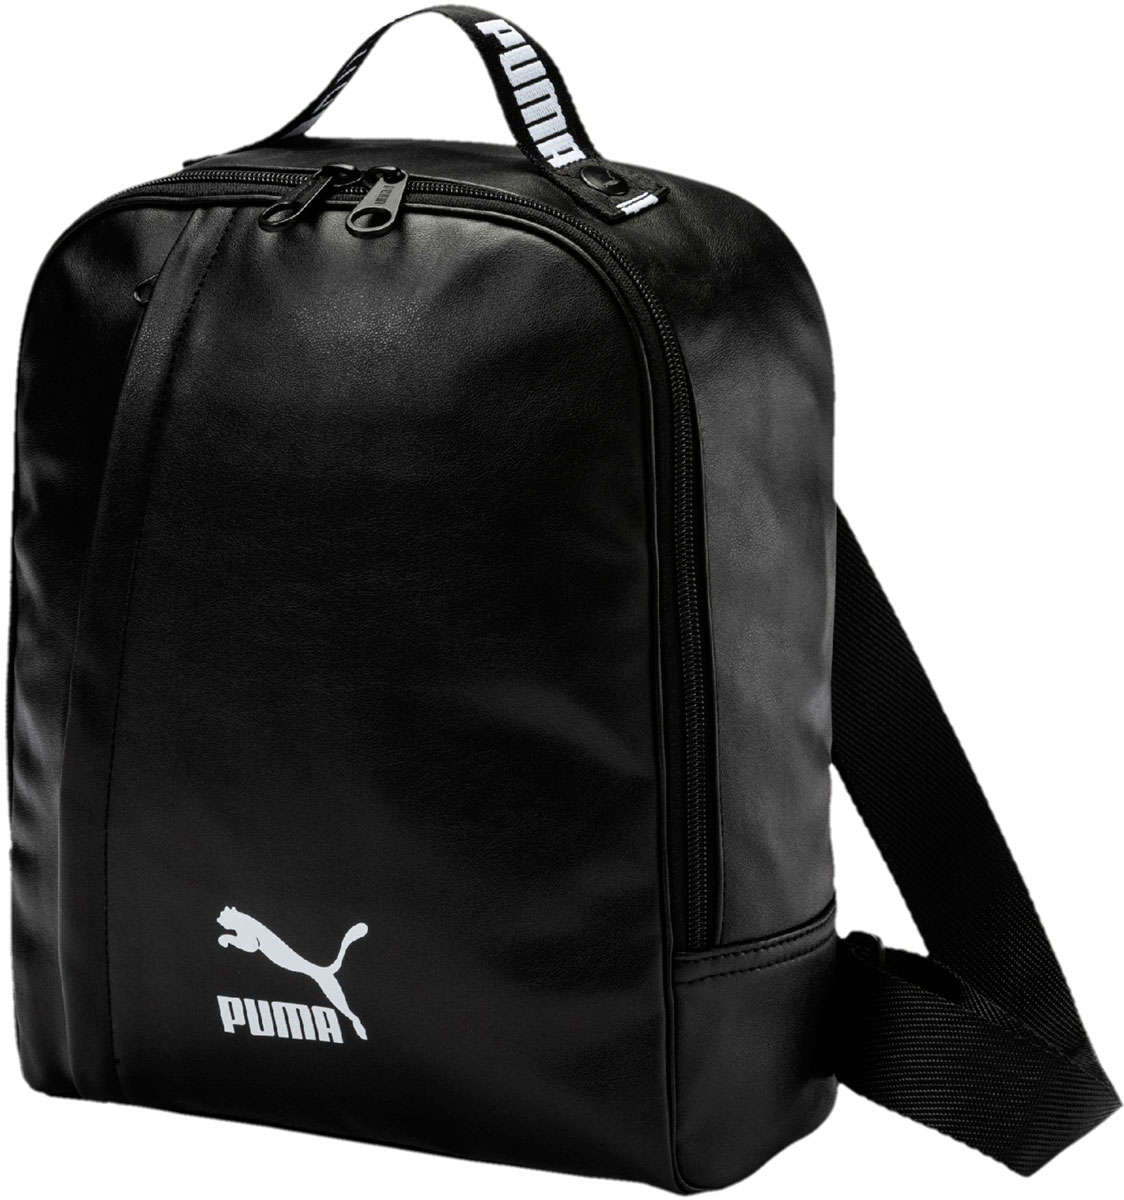 Рюкзак женский Puma Prime Icon Bag P, цвет: черный, 7 л. 07515201